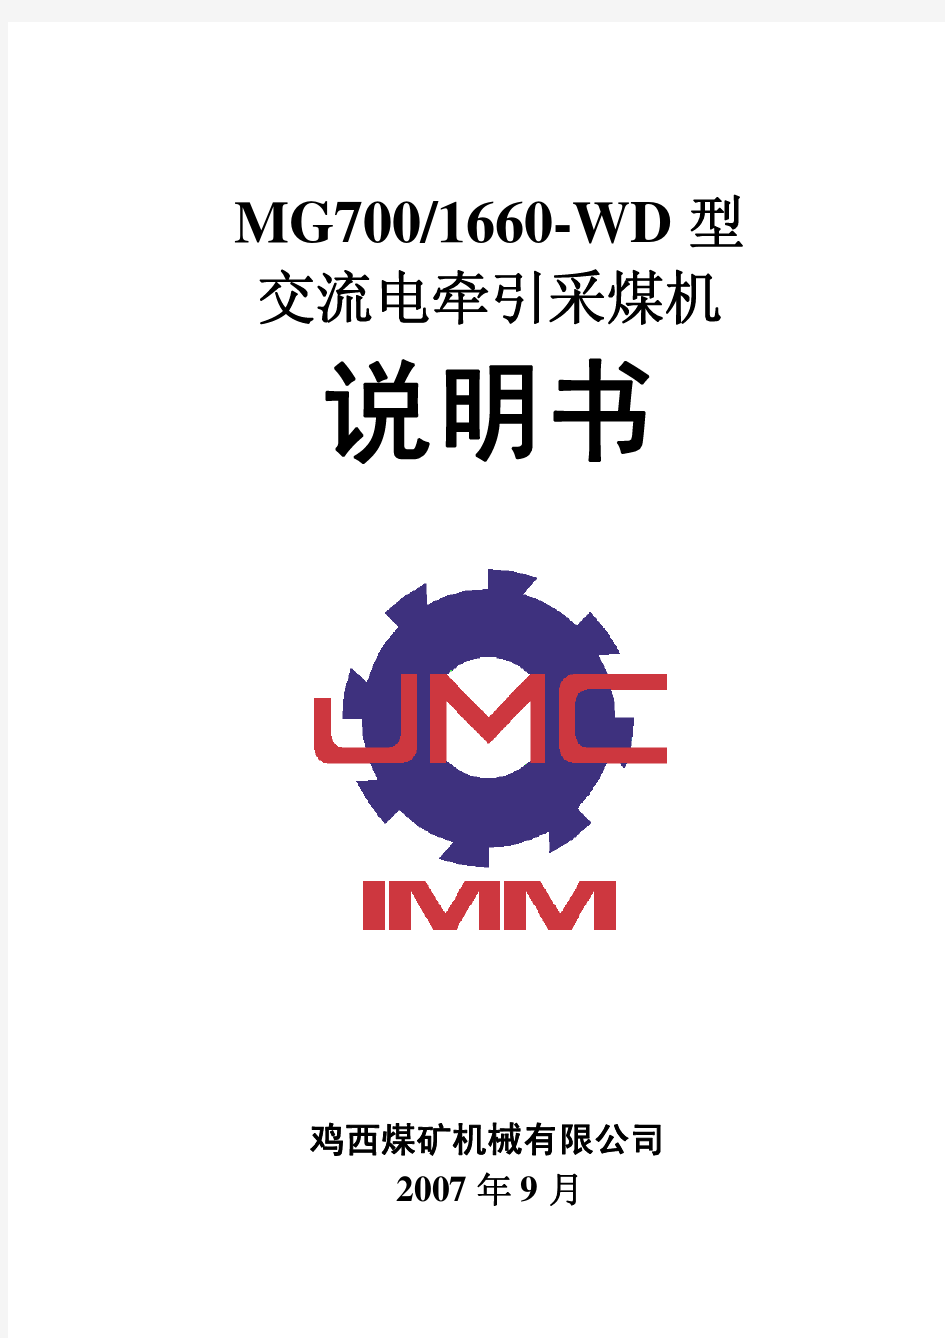 MG700-1660WD型采煤机说明书